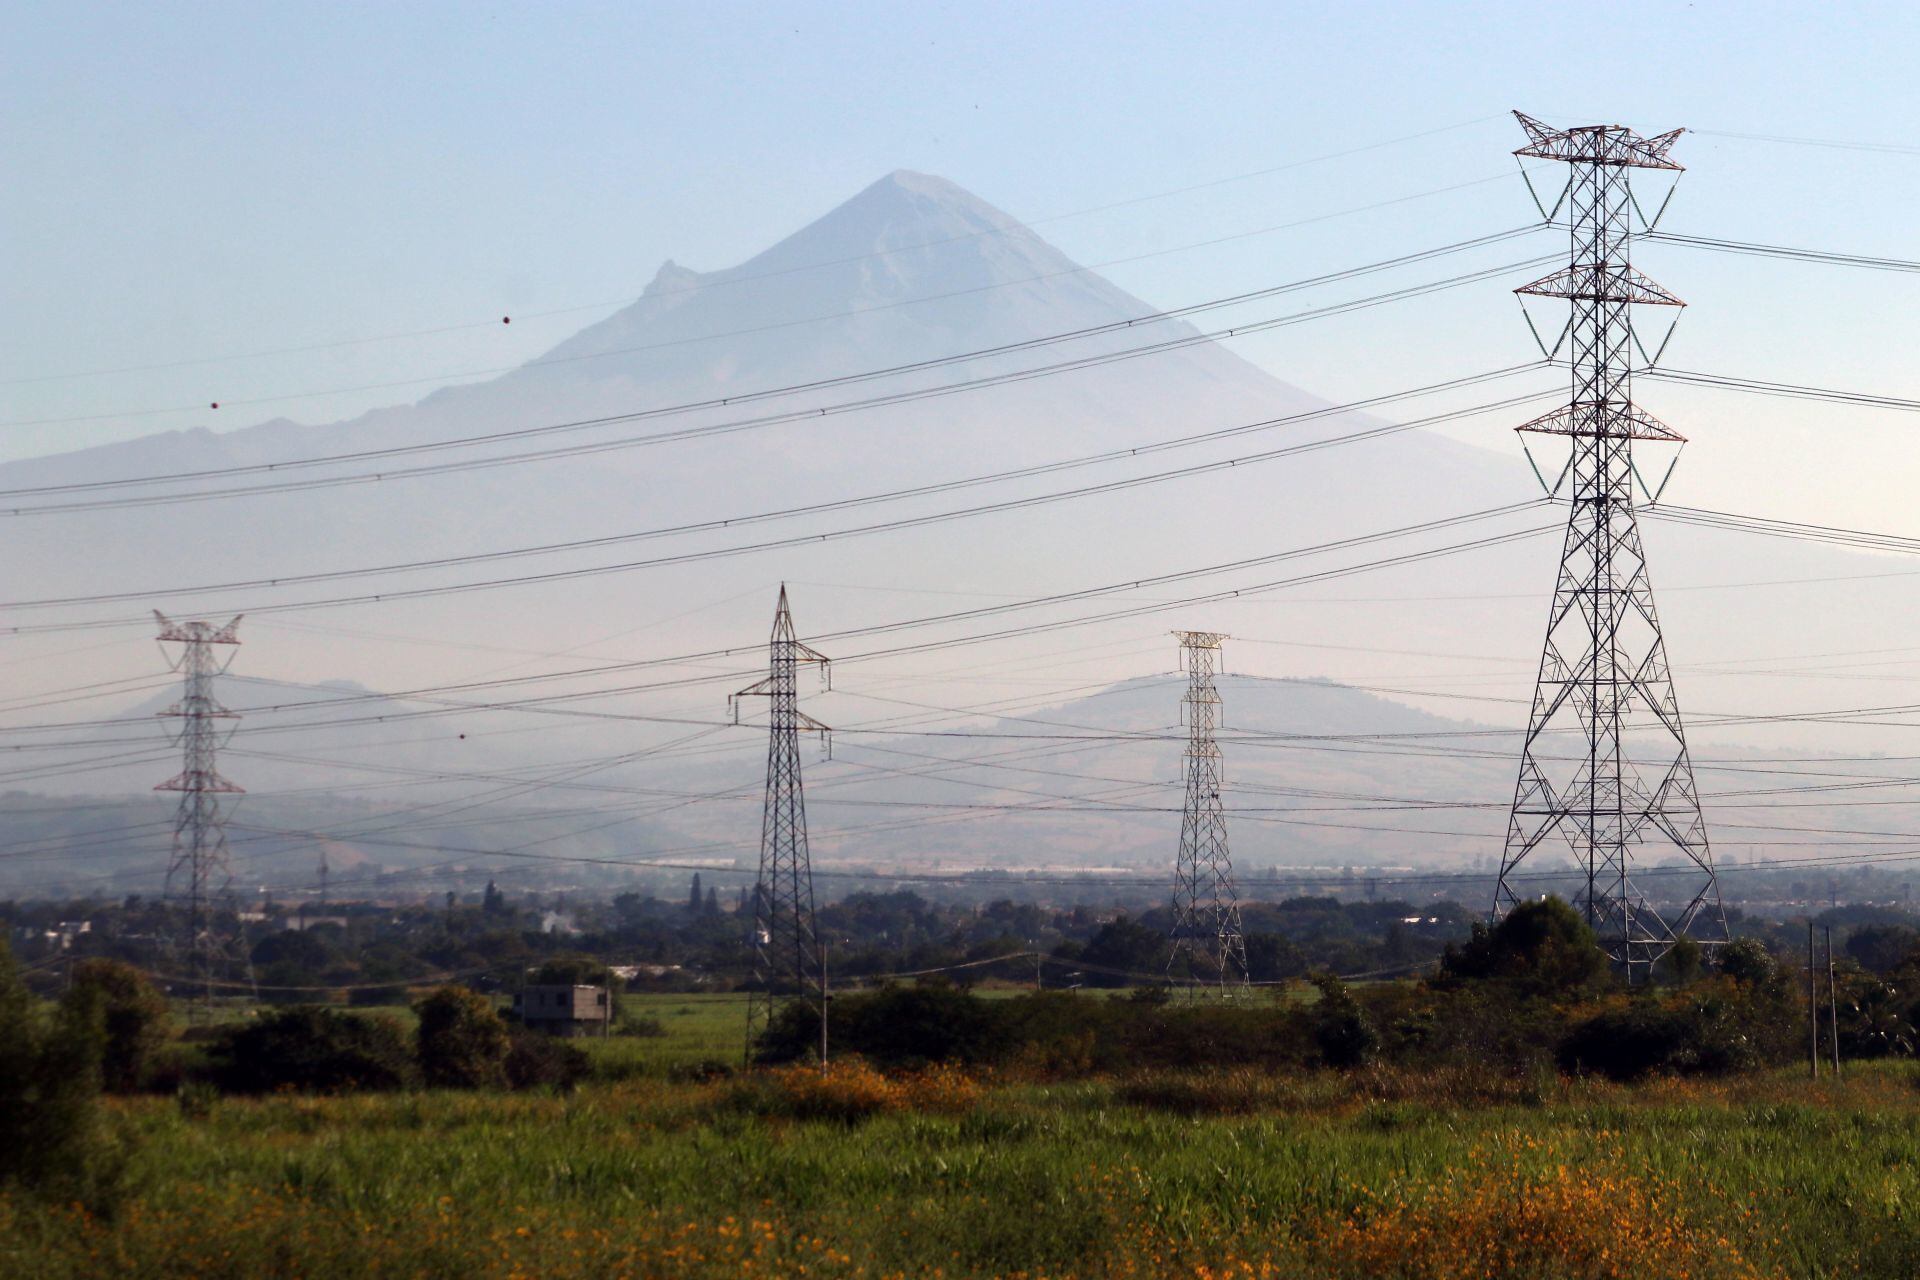 México es ‘pobre’ en energía y tiene red eléctrica ‘obsoleta’, aseguran especialistas